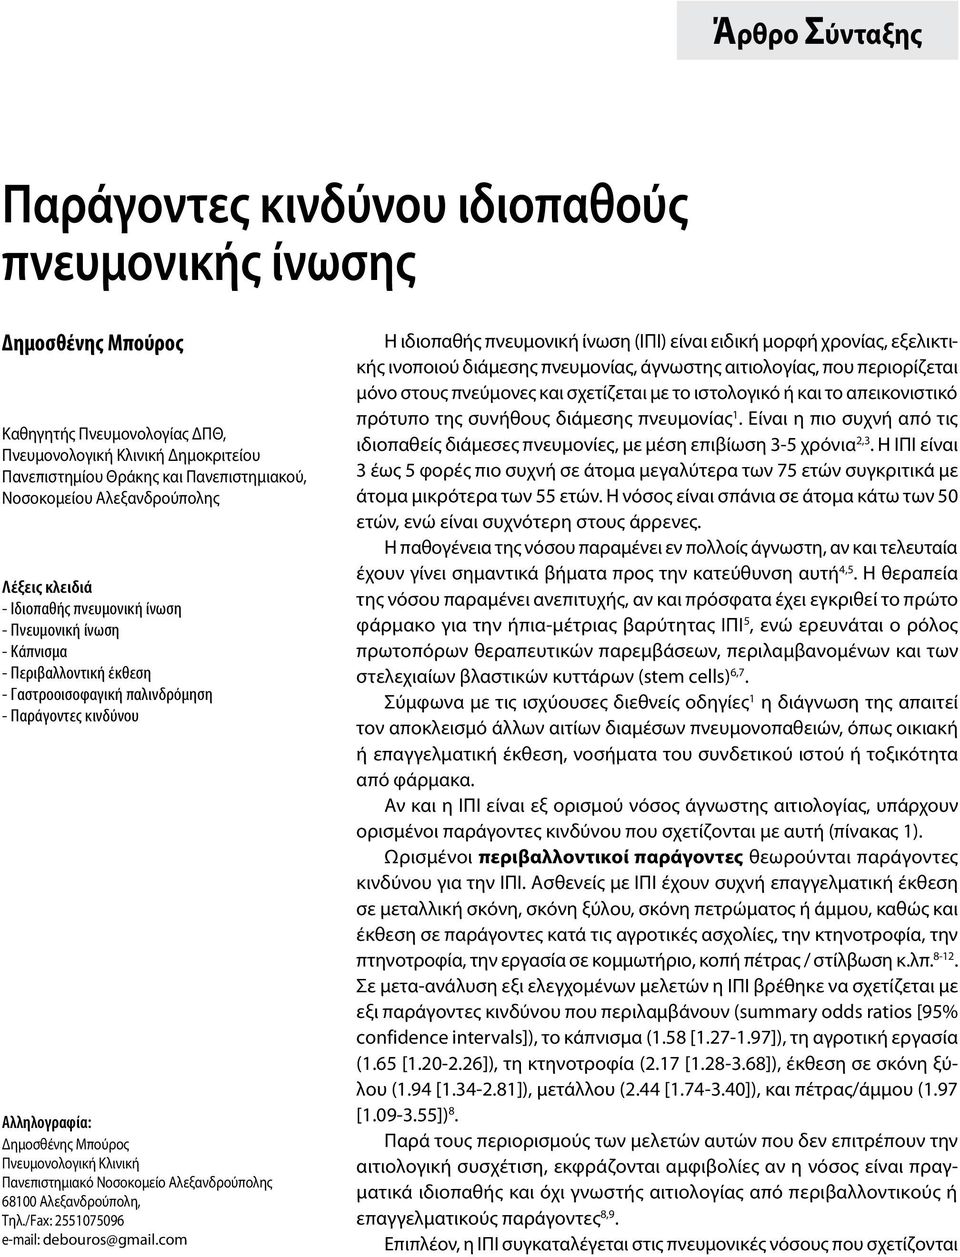 Δημοσθένης Μπούρος Πνευμονολογική Κλινική Πανεπιστημιακό Νοσοκομείο Αλεξανδρούπολης 68100 Αλεξανδρούπολη, Τηλ./Fax: 2551075096 e-mail: debouros@gmail.